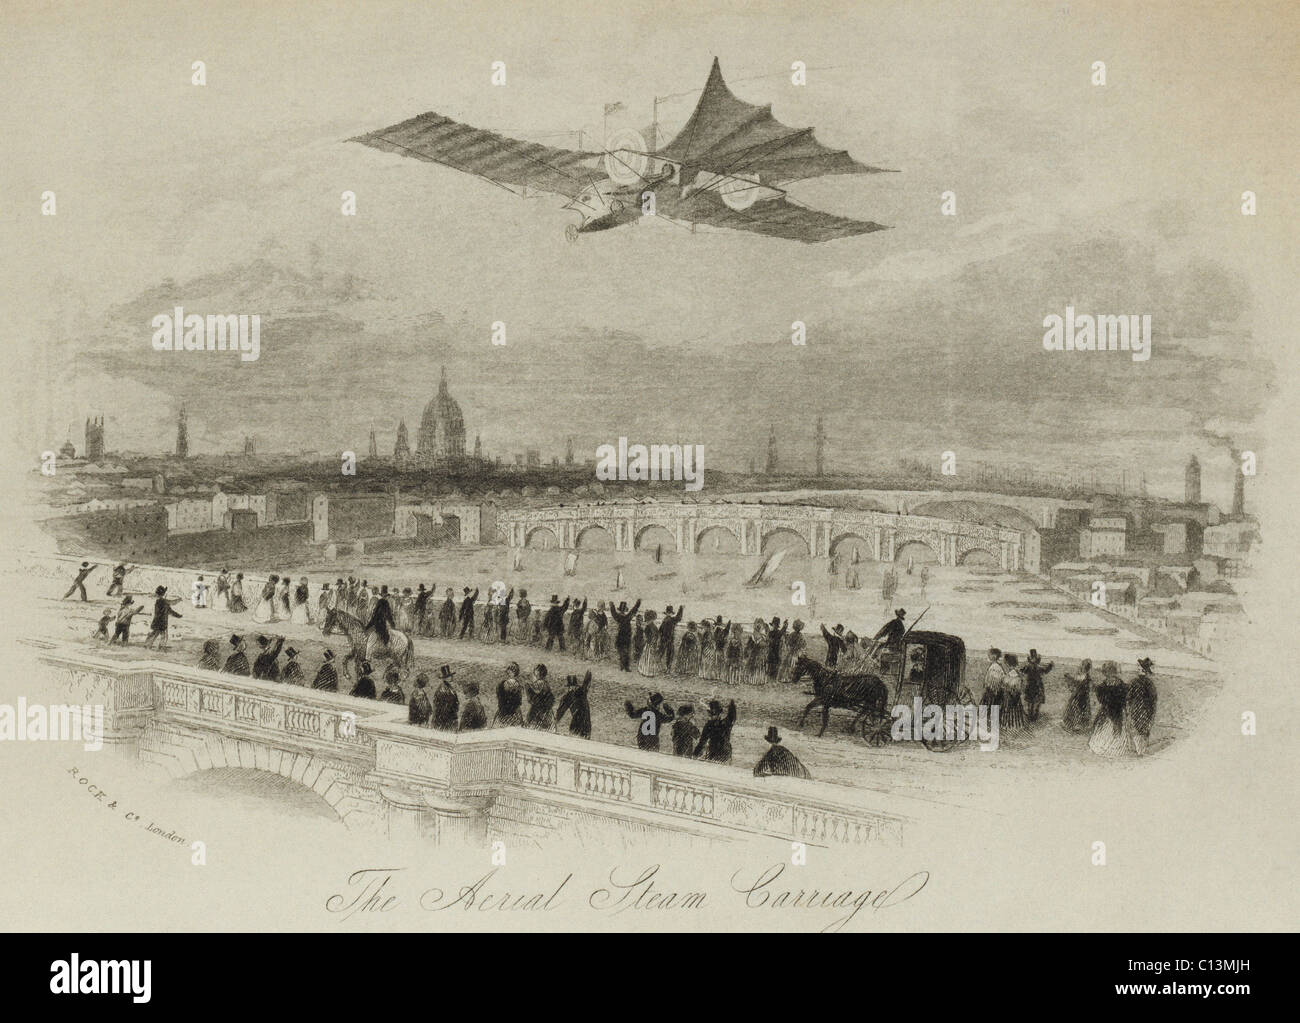 La voiture à vapeur aérienne proposée par l'inventeur britannique William Samuel Henson dans un imaginaire vol au dessus de la rivière Thames, London 1843. Tente de voler un modèle de chariot à vapeur n'ont pas réussi. LC-DIG-ppmsca-02570 Banque D'Images